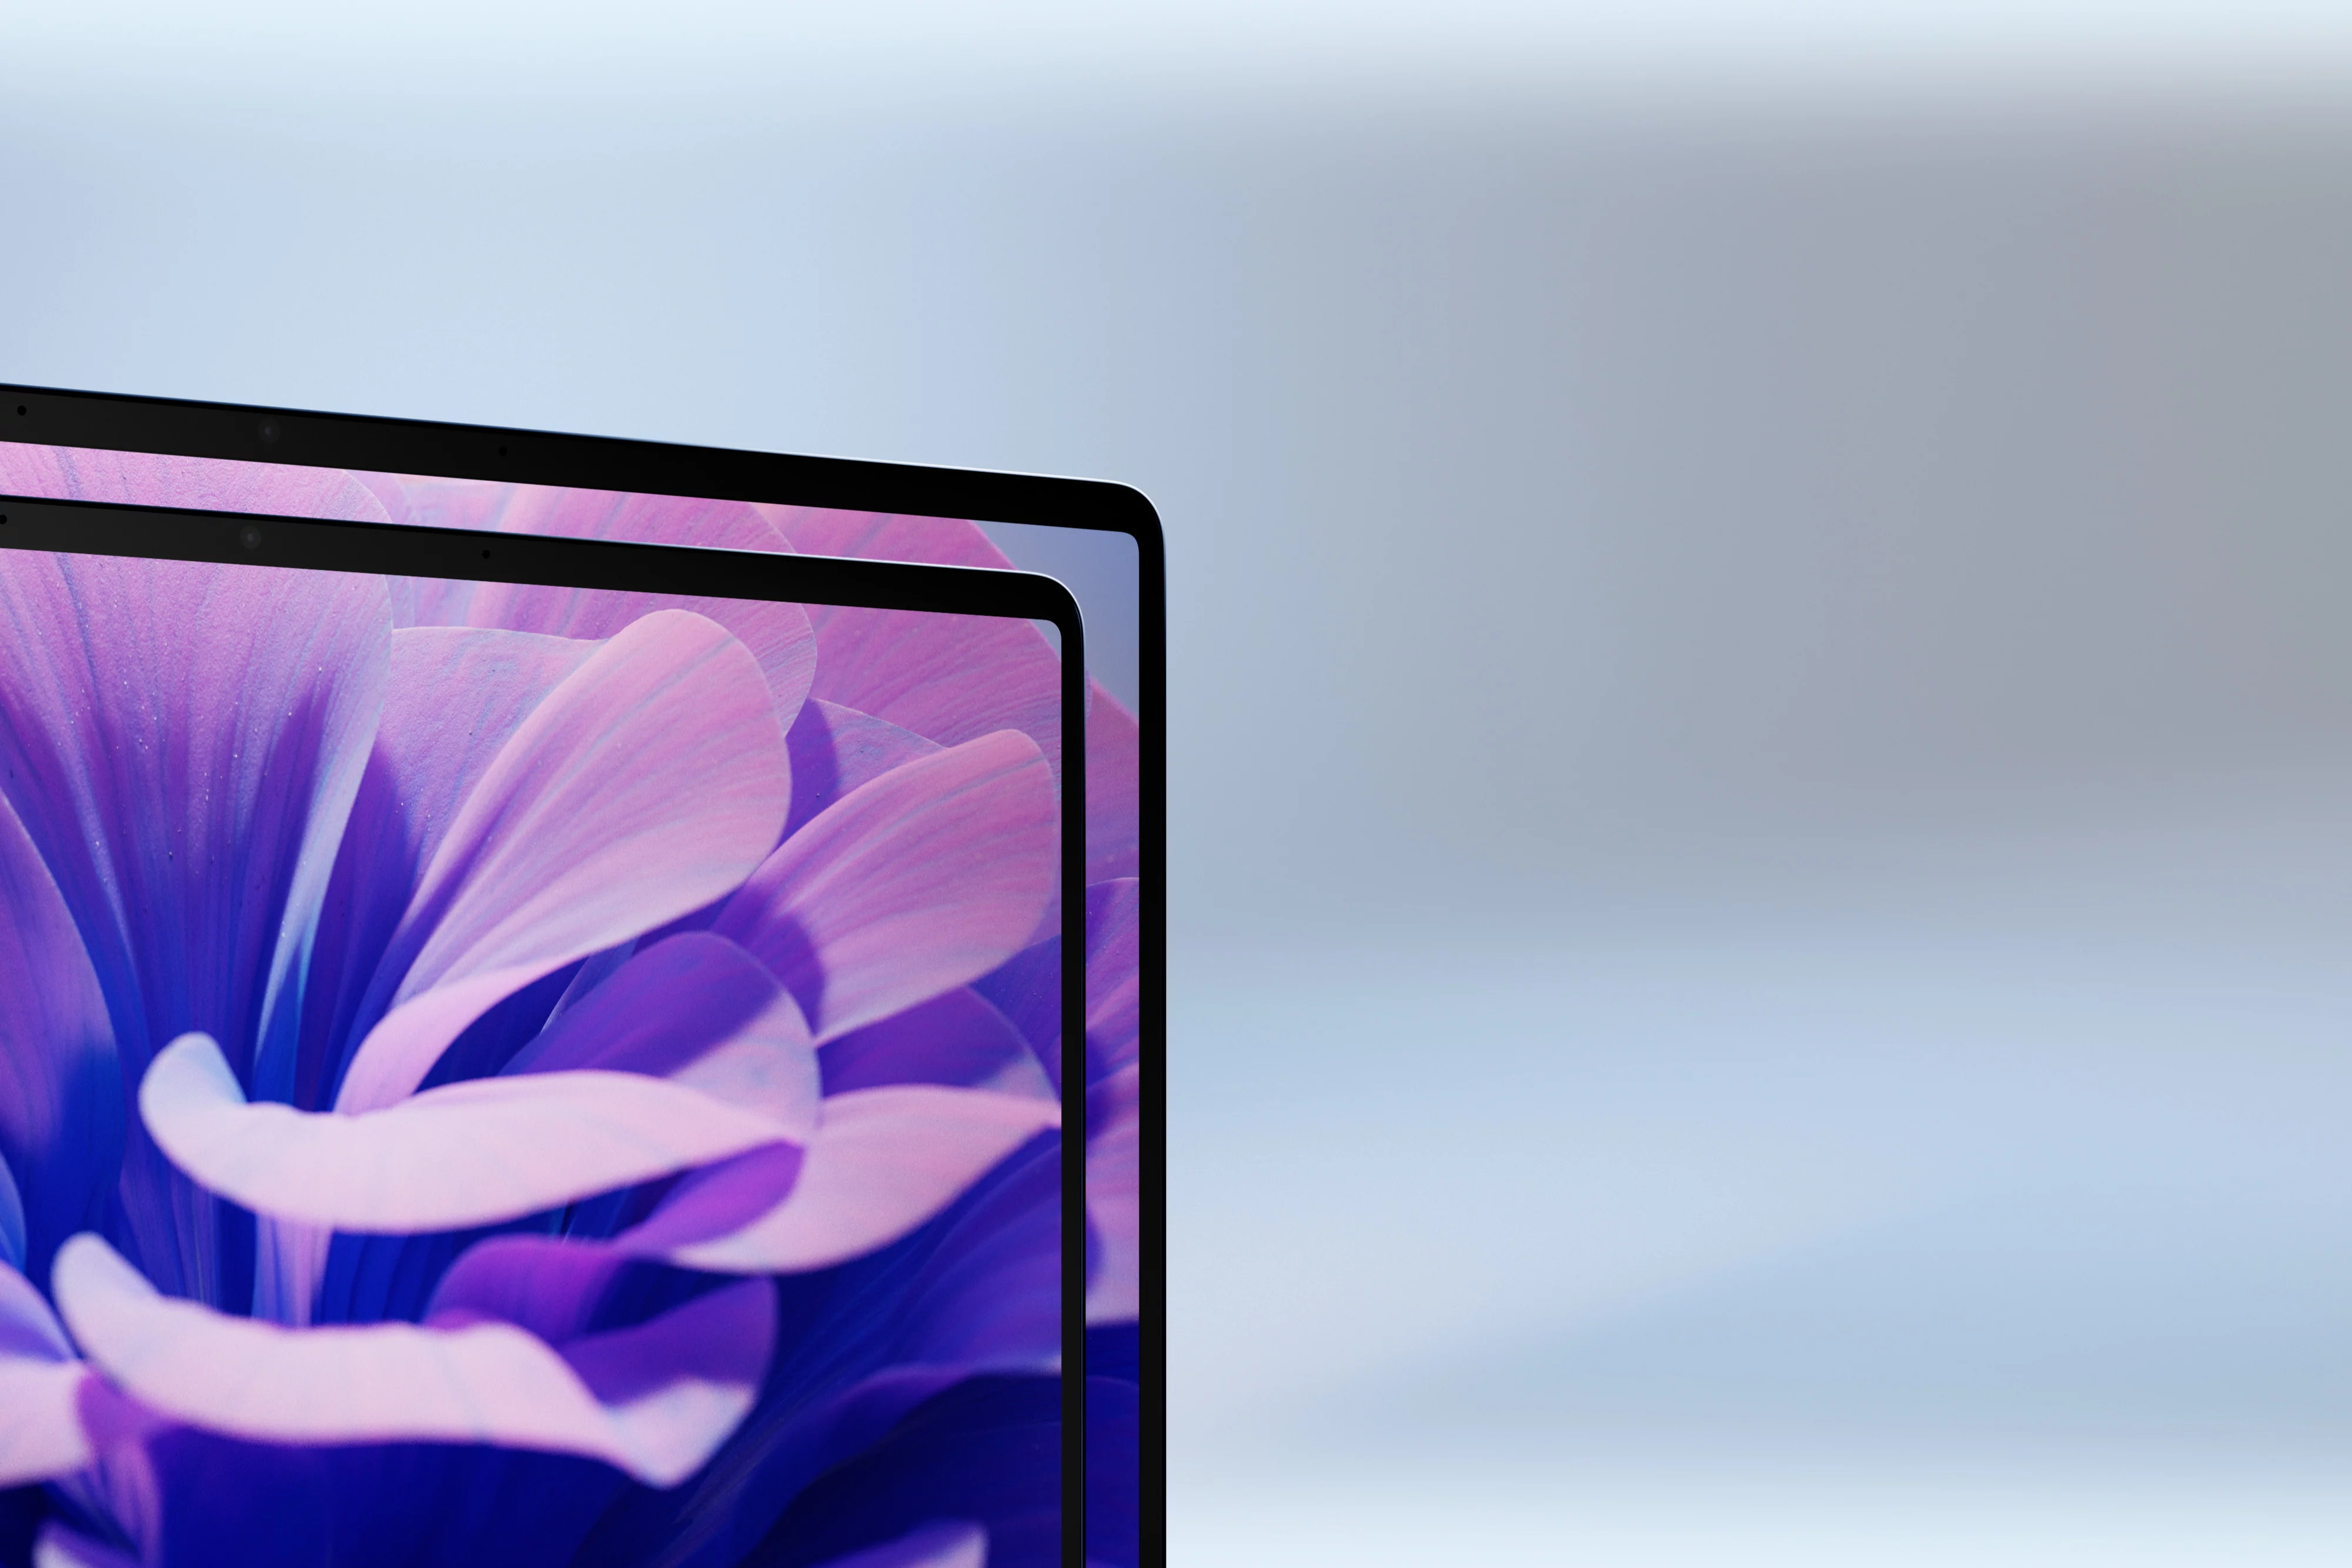 Velký obrázek videa s funkcemi Surface Laptopu prezentující dvě velikosti displeje, tenký rámeček a obrazovku.